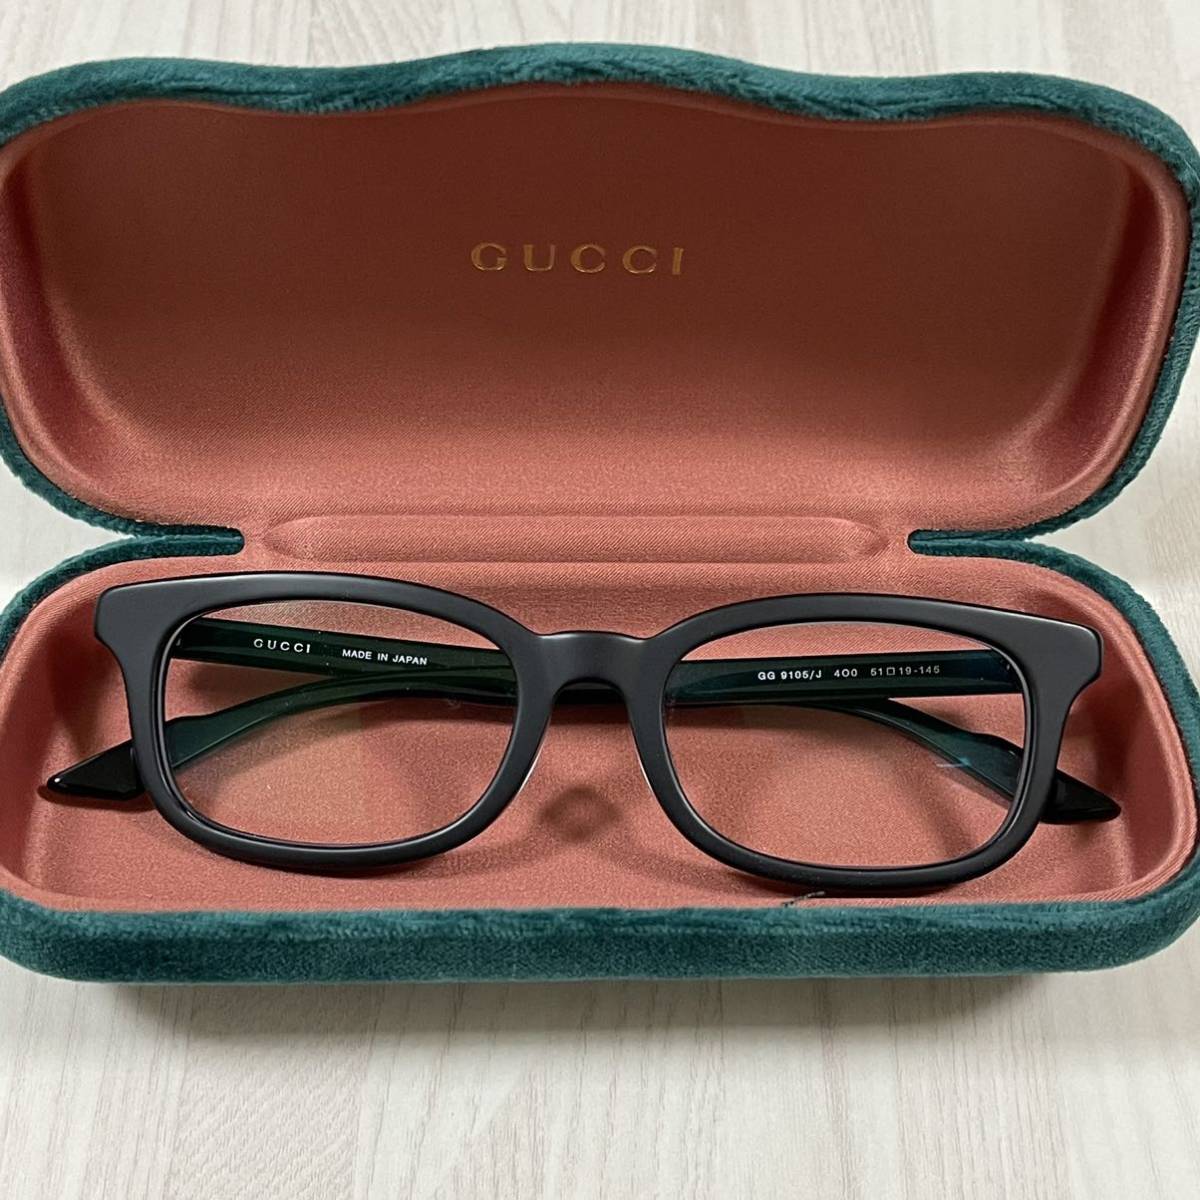 グッチ GUCCI メガネ 眼鏡 黒縁メガネ 新品 福袋 シェリーラインインターロッキングGG 期間限定お試し価格 箱付き 未使用